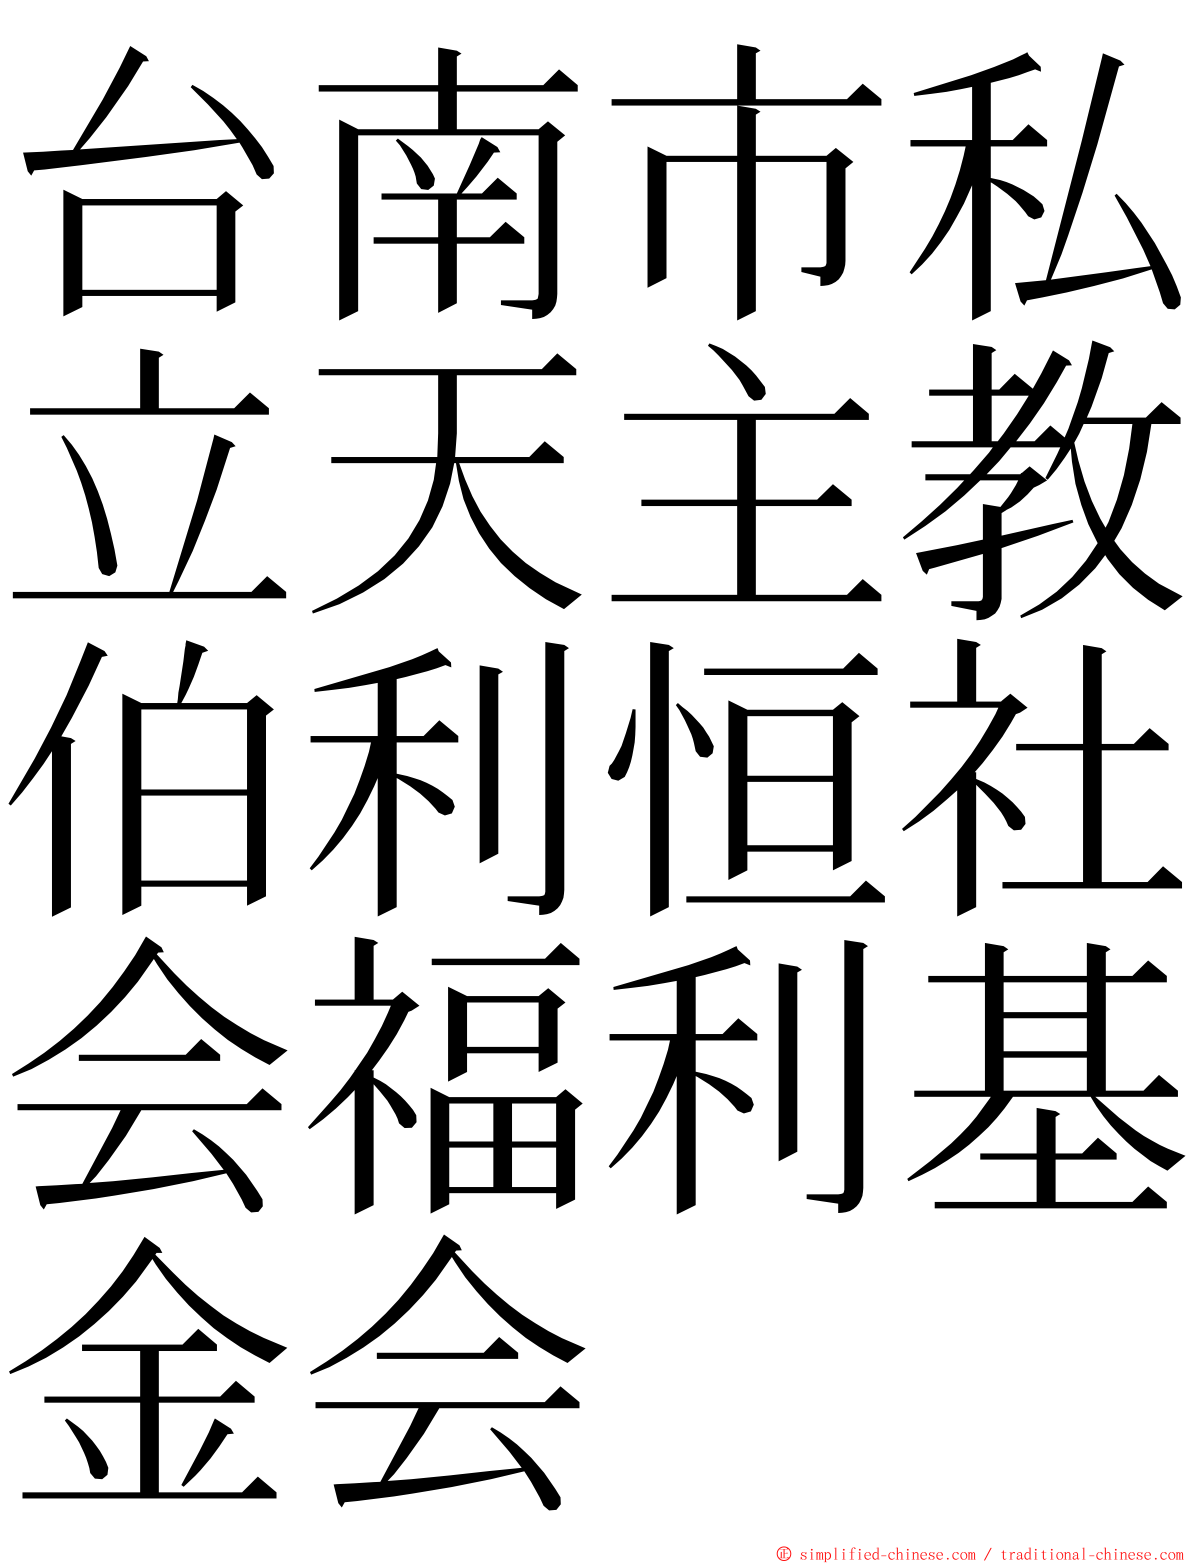 台南市私立天主教伯利恒社会福利基金会 ming font